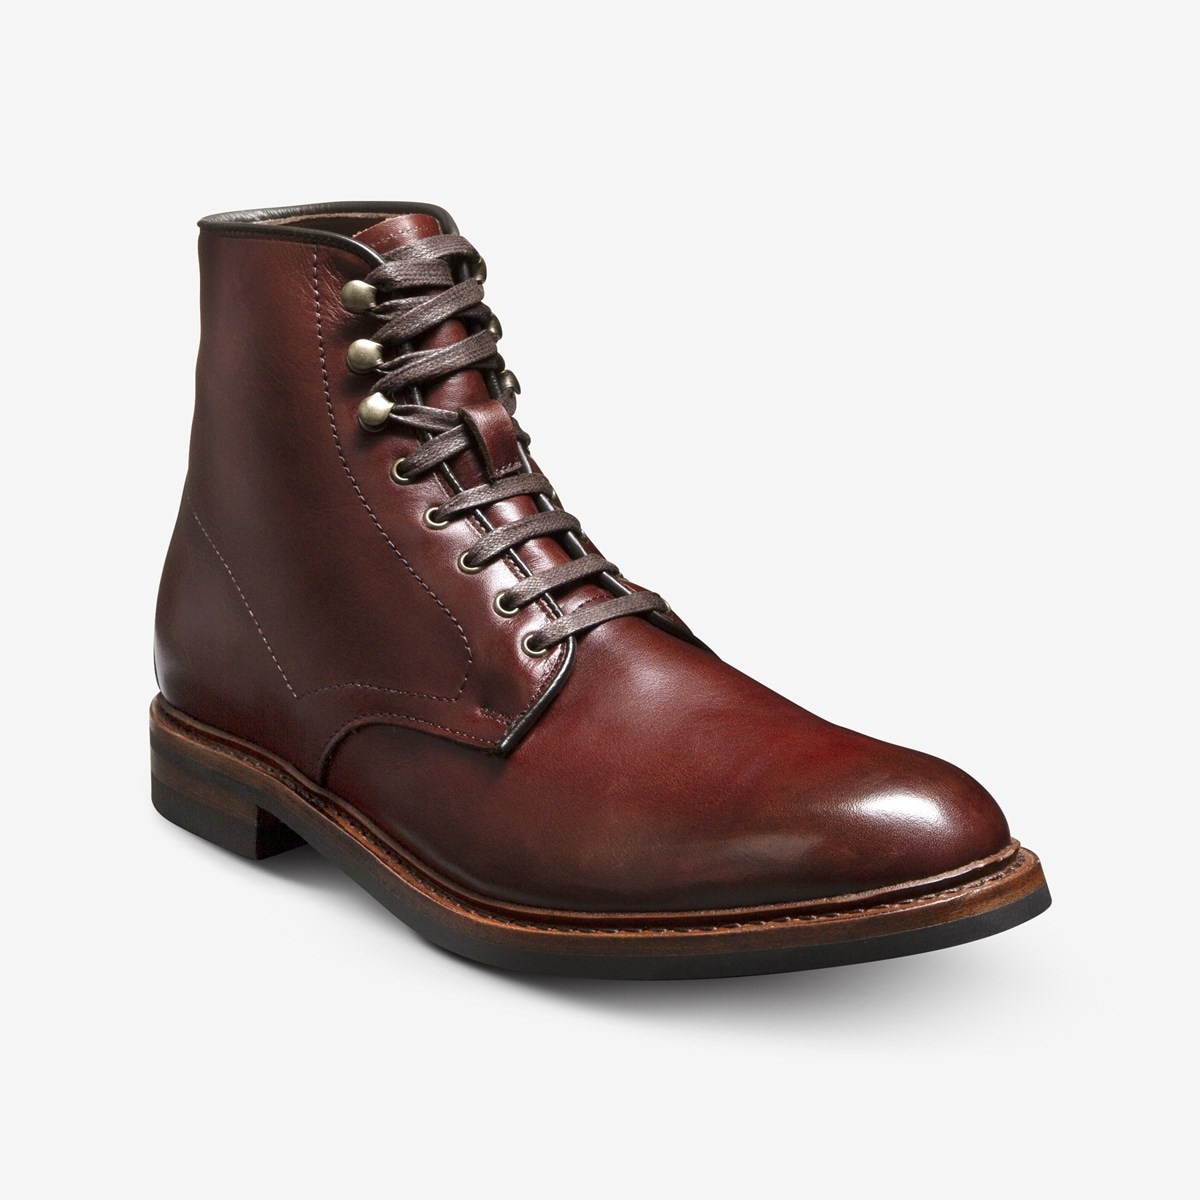 Higgins Mill Weatherproof Boot | Men's Boots | Allen Edmonds